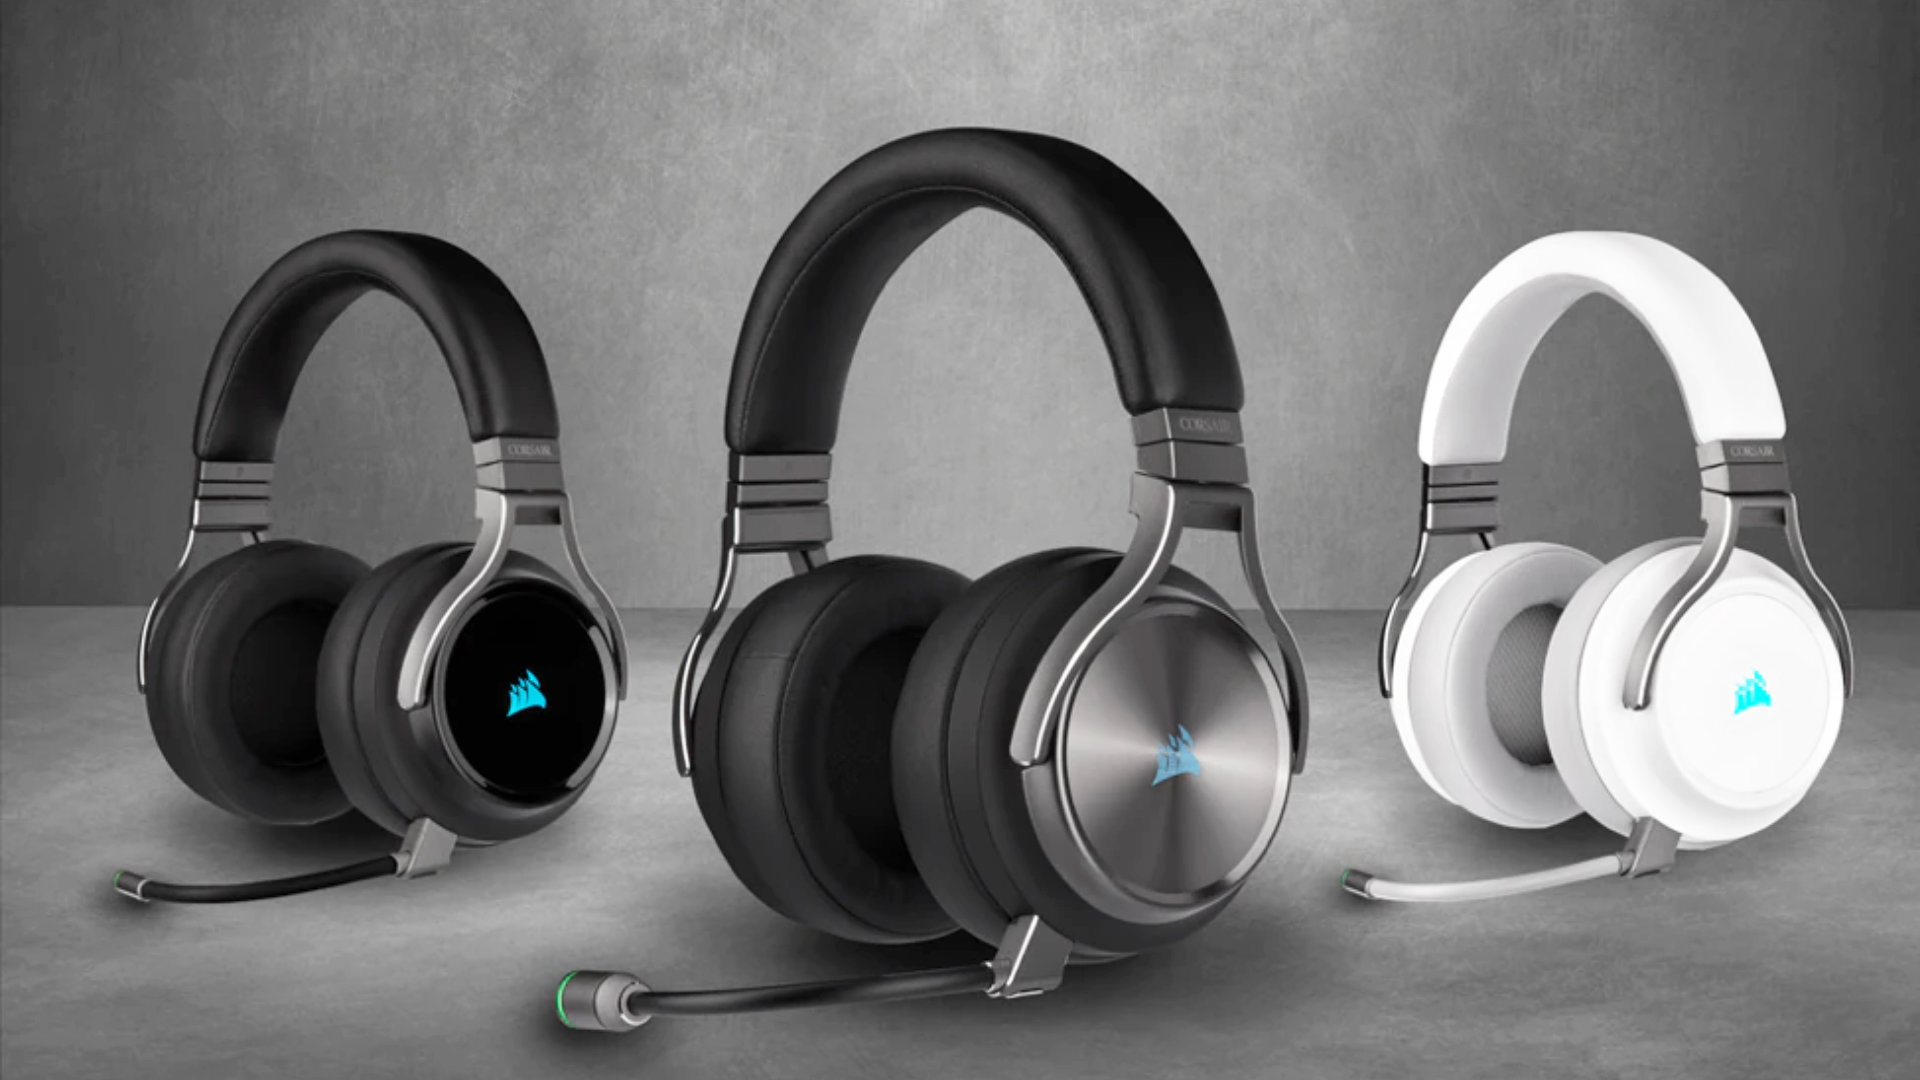 De Virtuoso RGB draadloze gaming-headsets van Corsair bieden een goede middenklasse